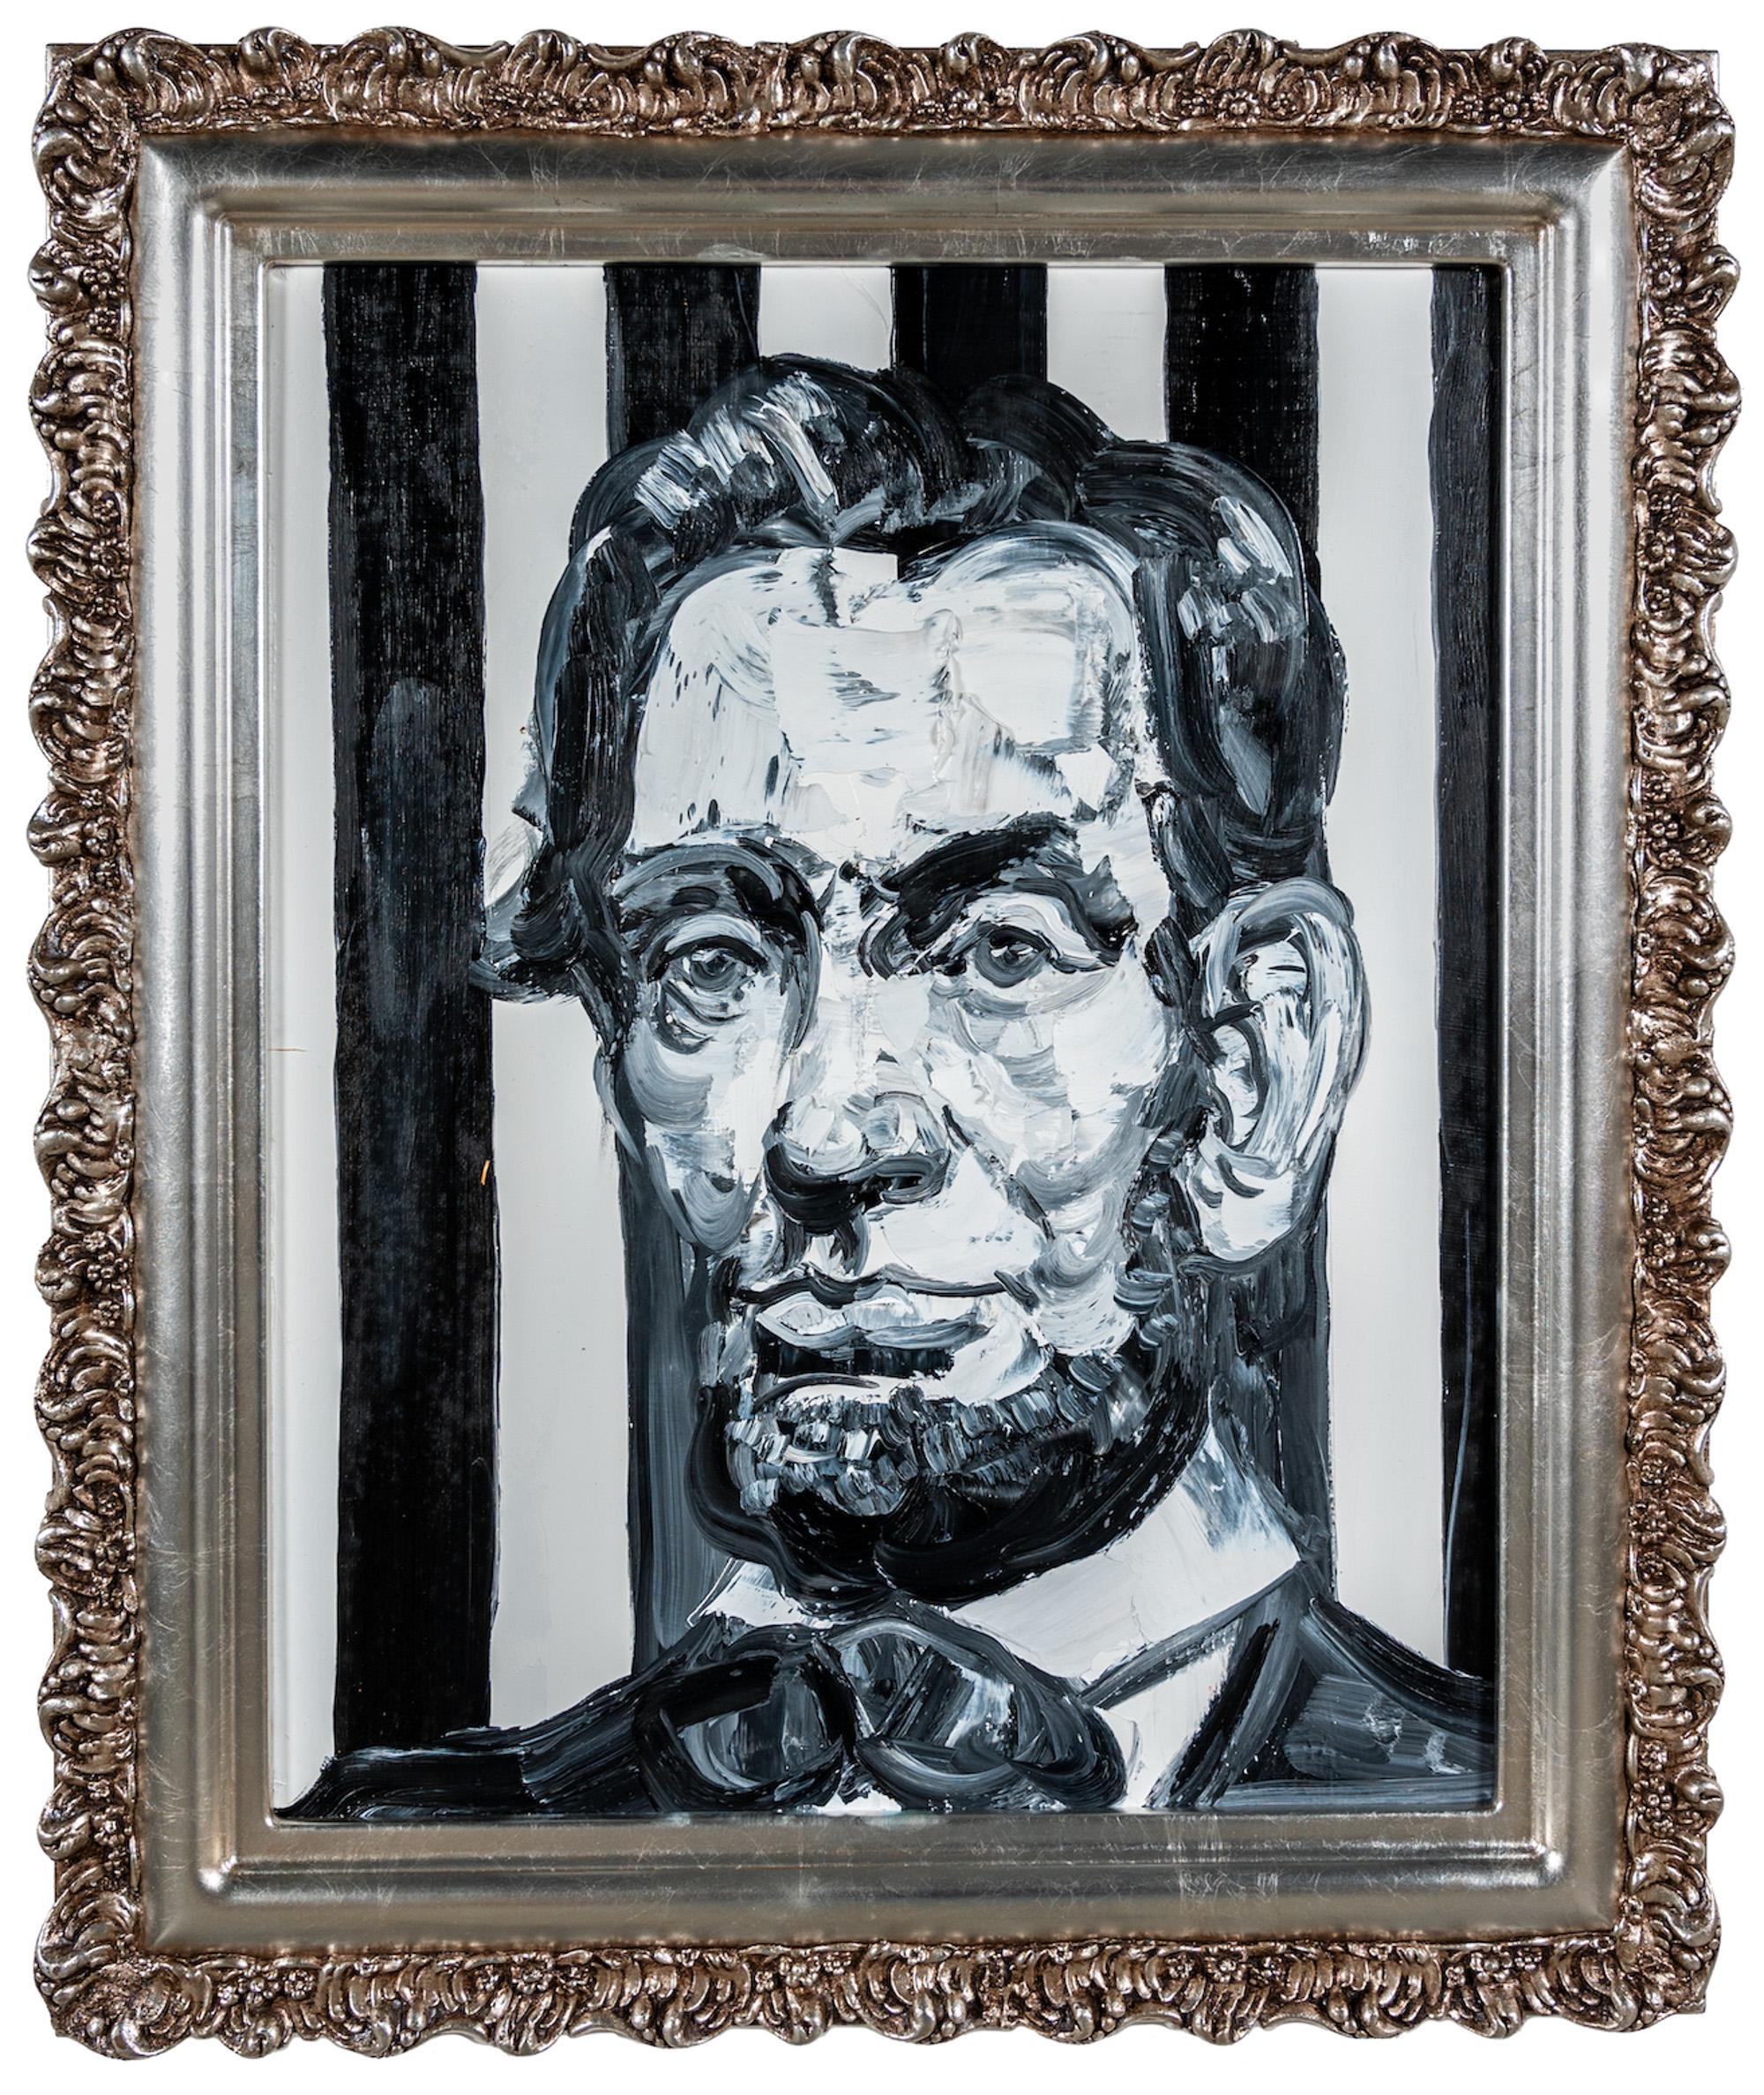 "Lincoln Black & White" ist ein gerahmtes Ölgemälde auf Holz von Hunt Slonem, das Präsident Abraham Lincoln inmitten eines gestreiften monochromen Hintergrunds zeigt. 

Dieses Werk ist in einem antiken Rahmen gefasst, der vom Künstler für dieses